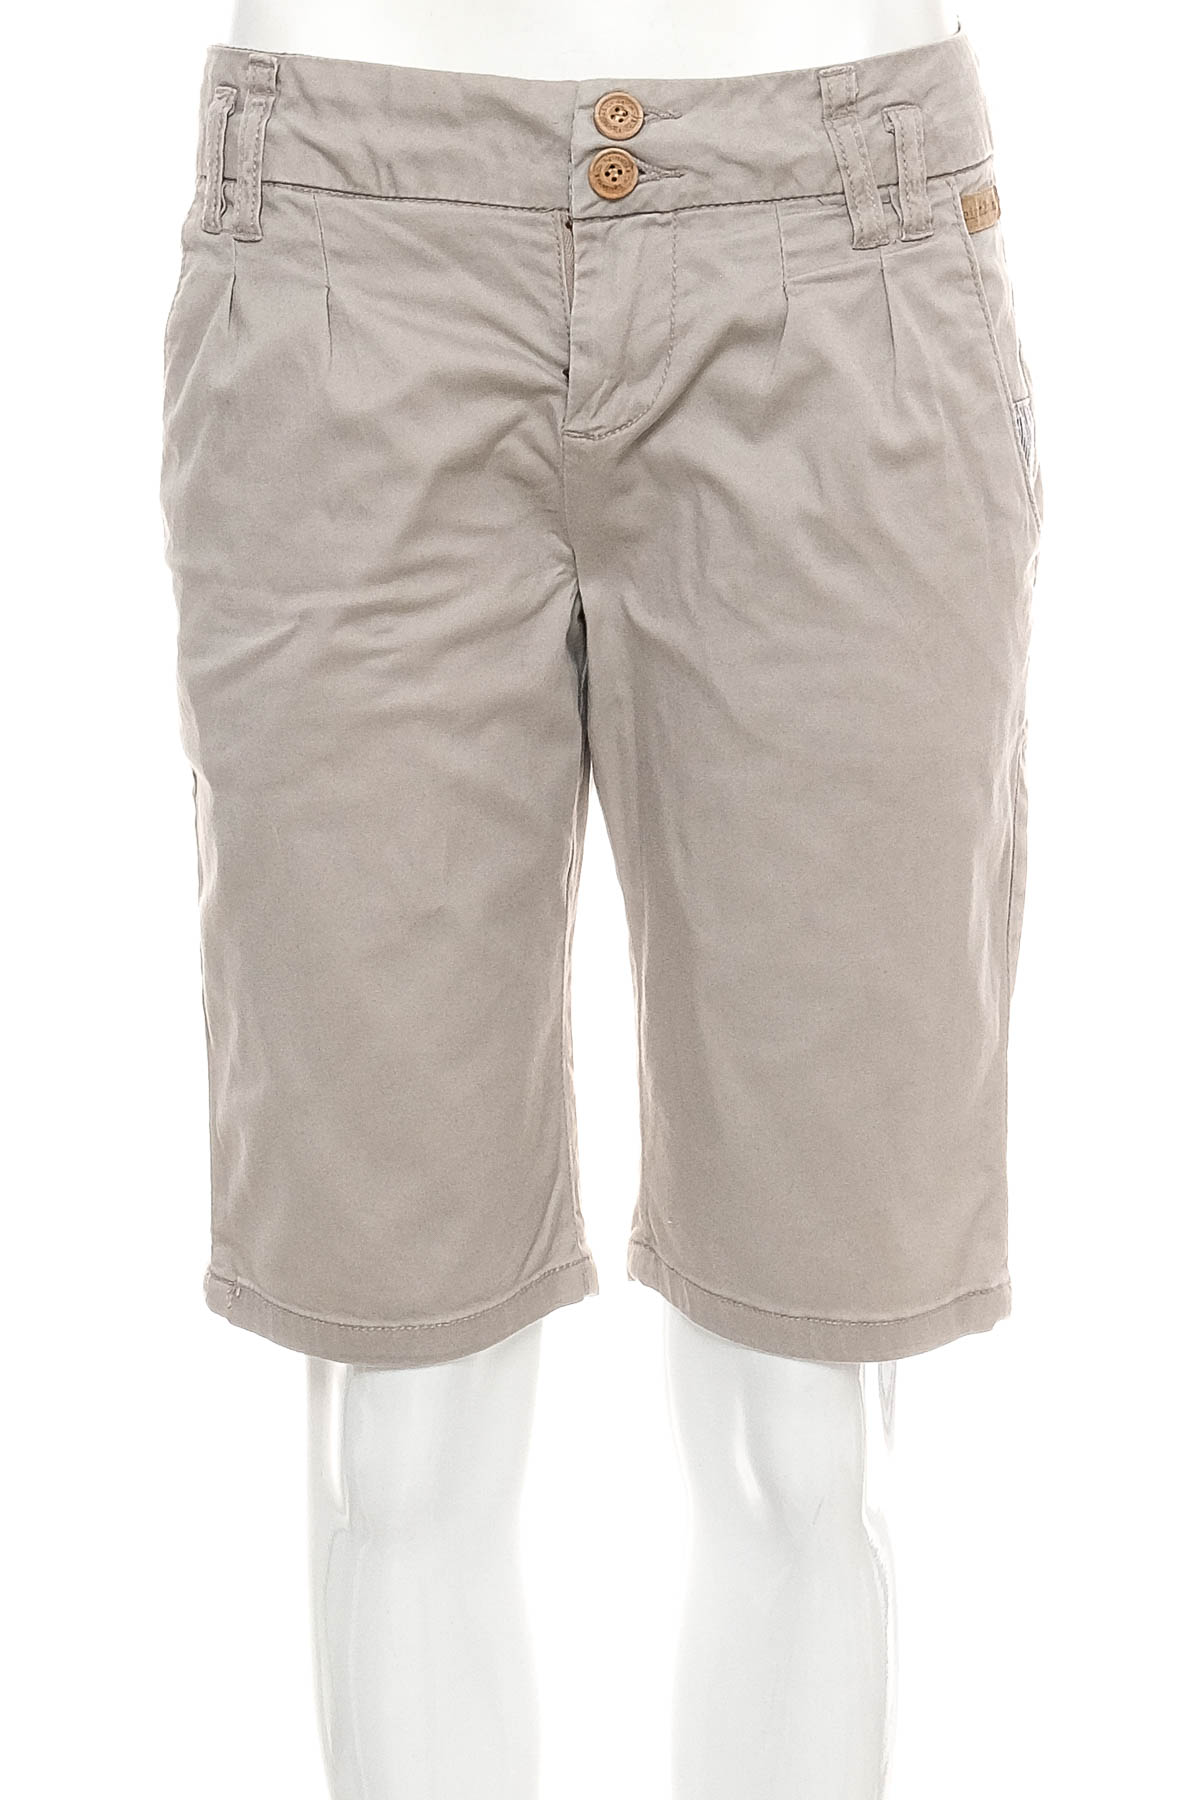 Female shorts - E2N - 0